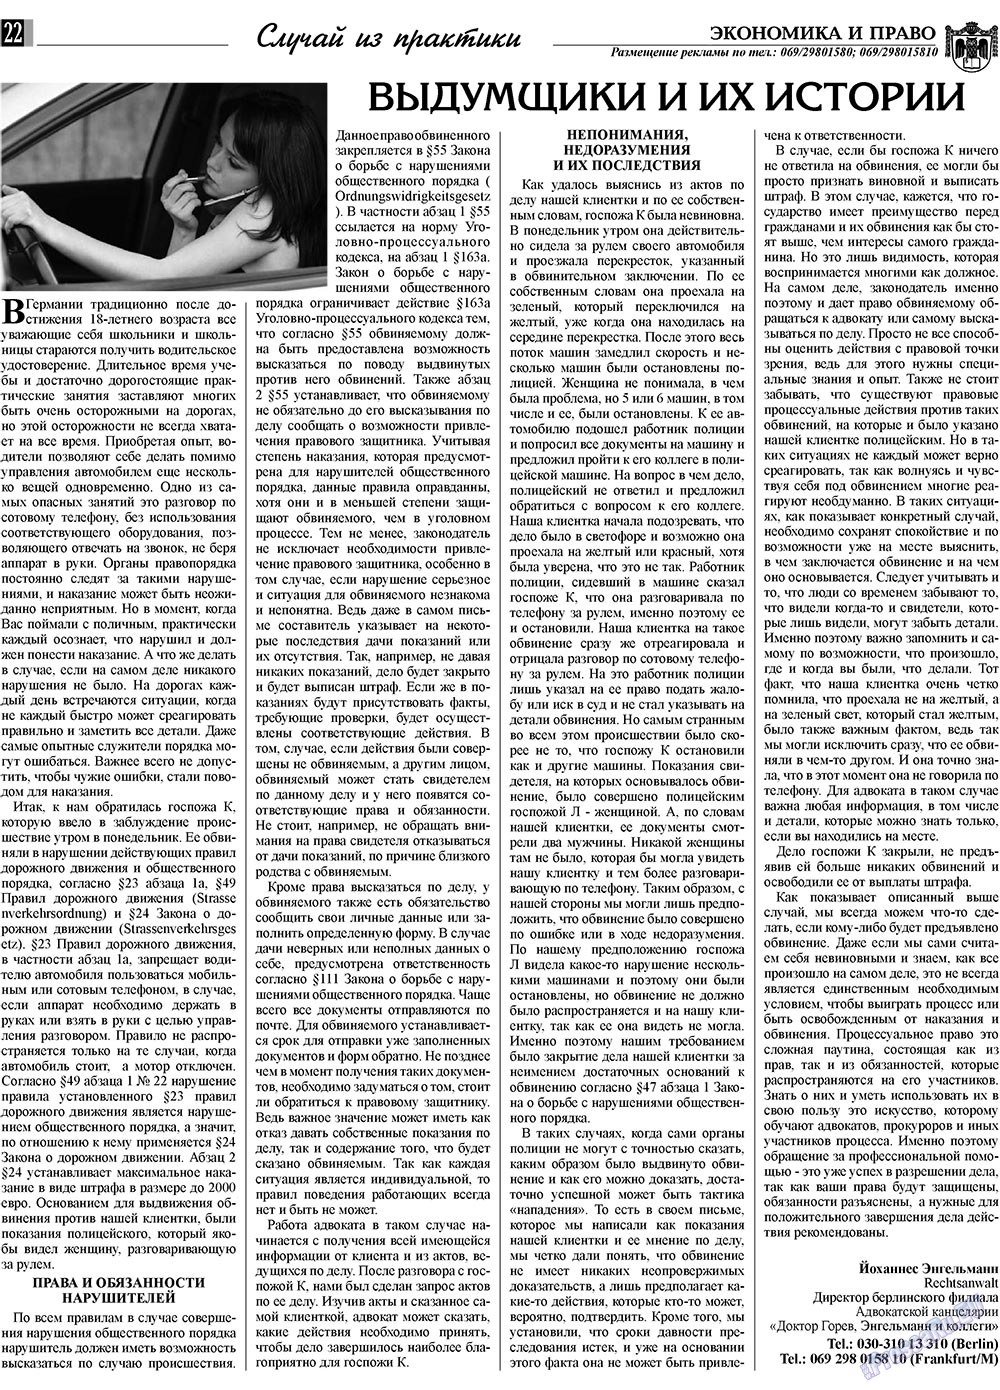 Экономика и право, газета. 2009 №5 стр.22